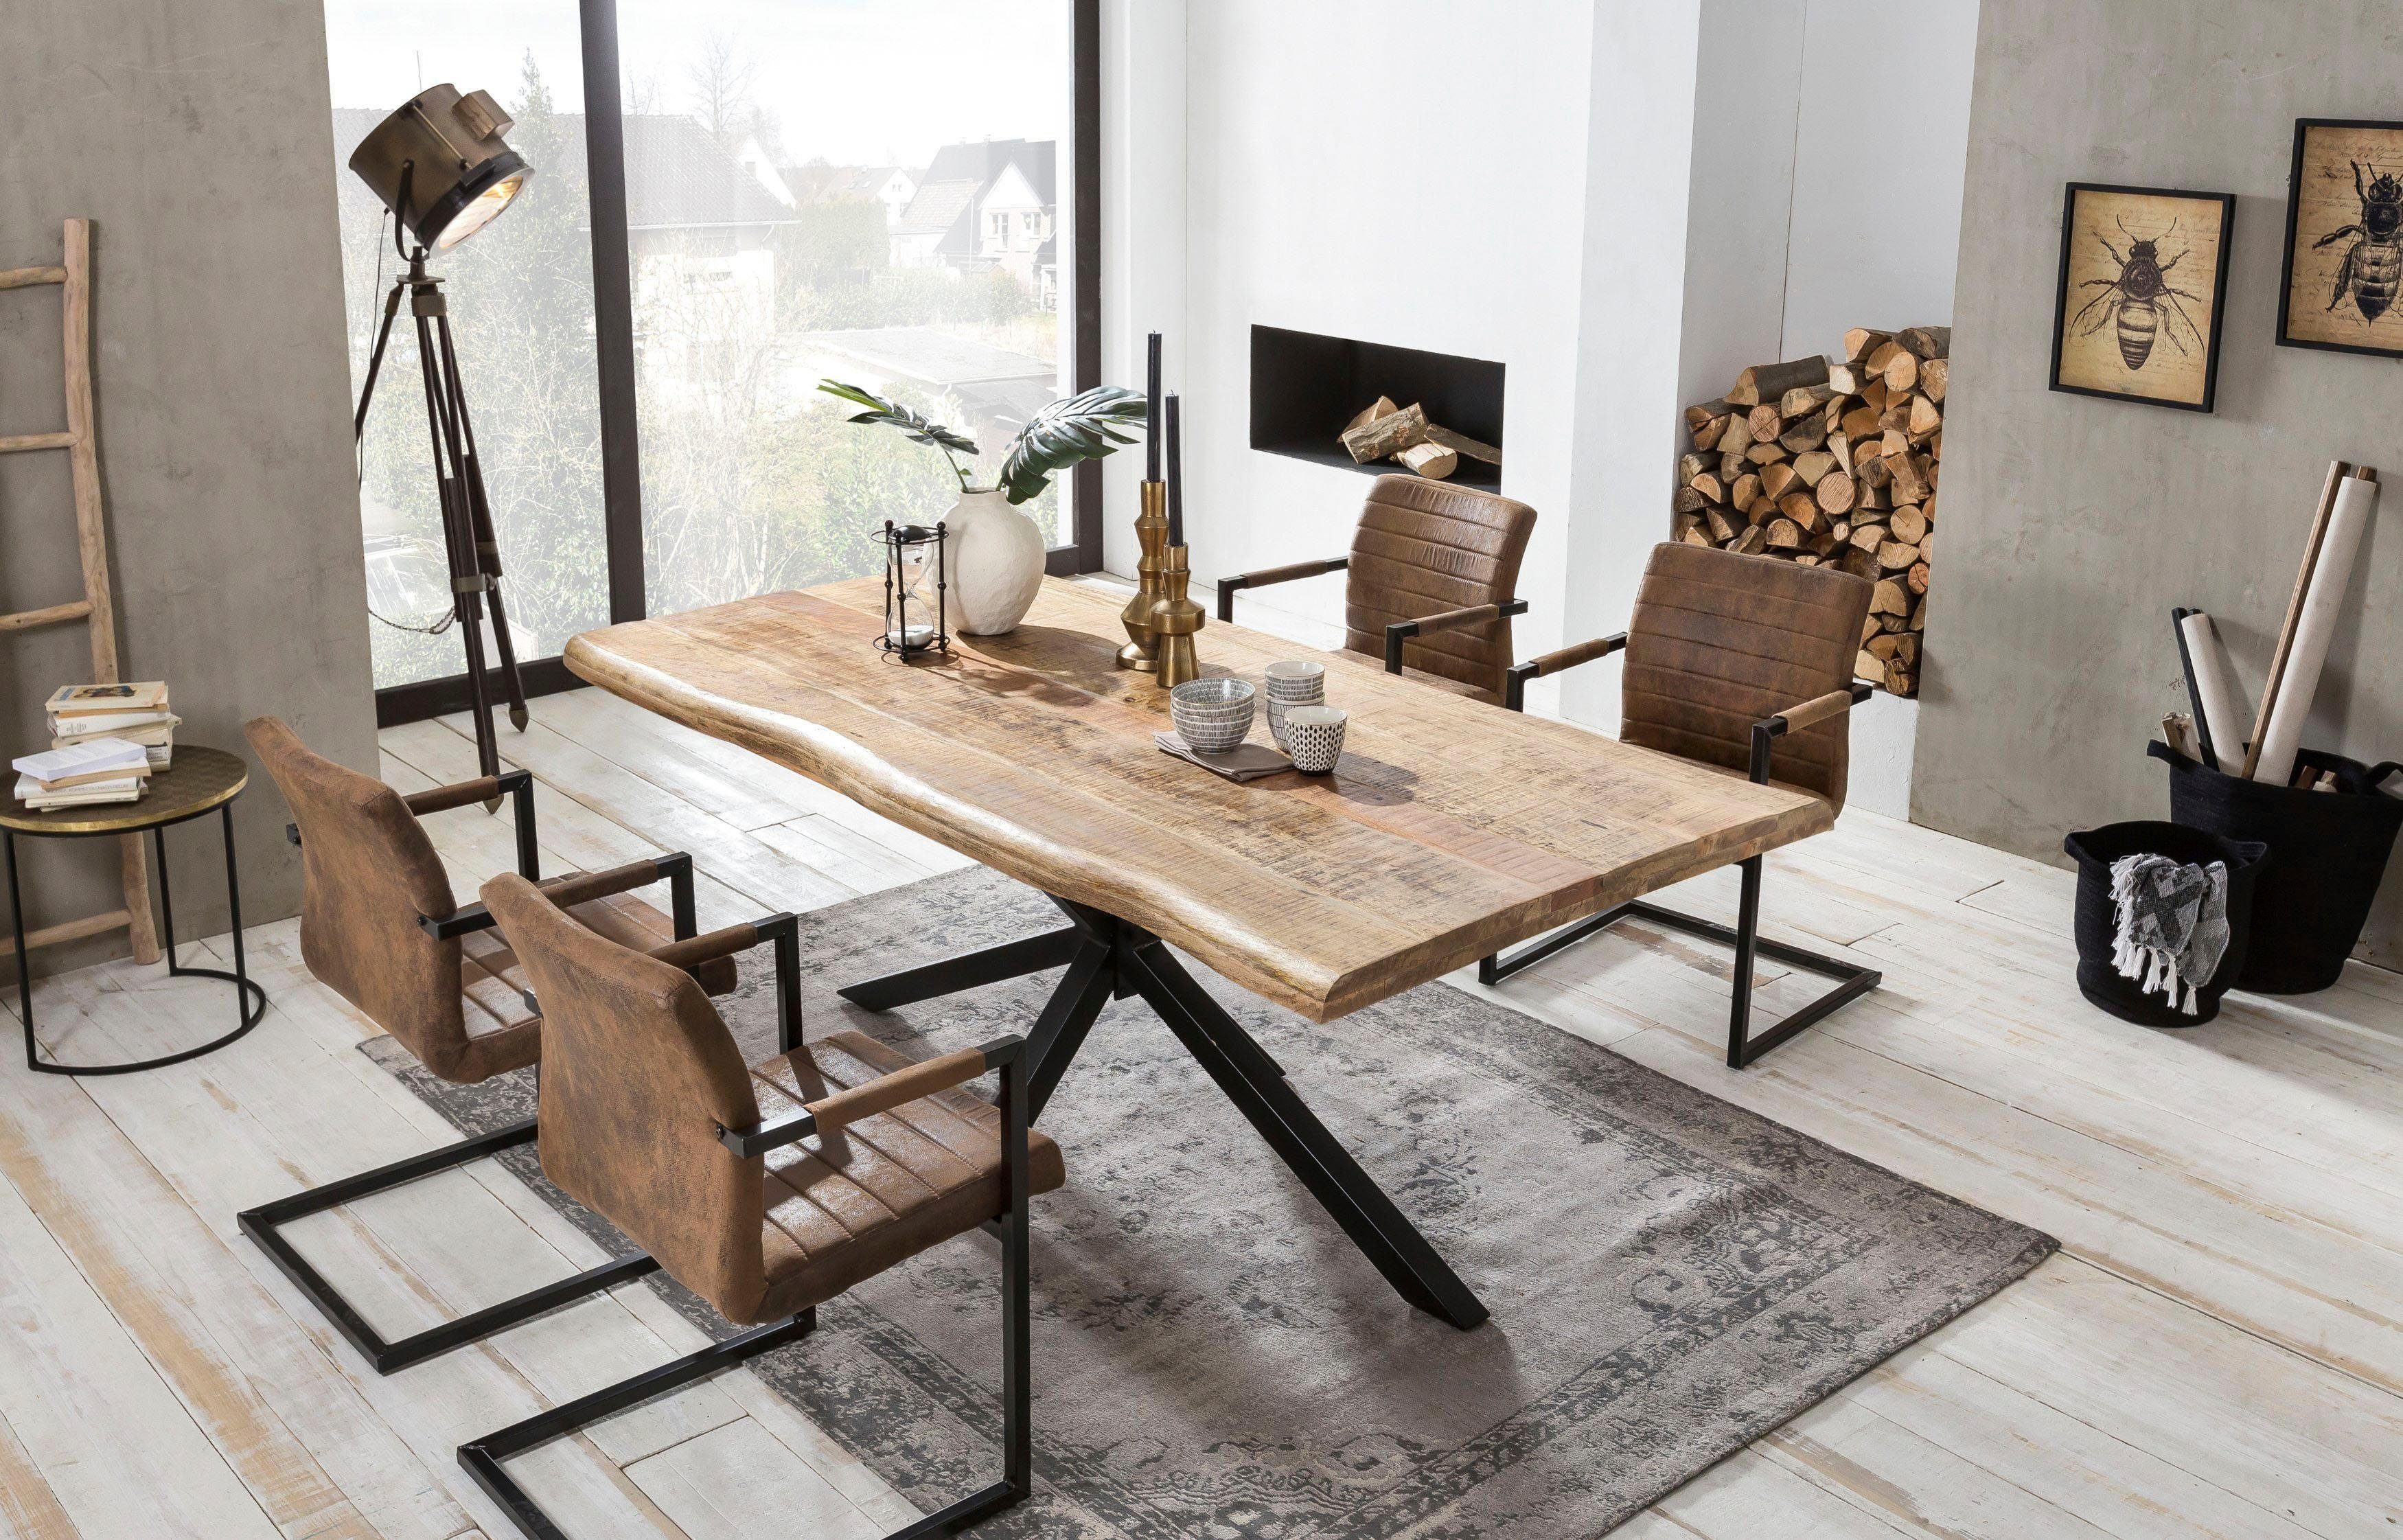 SIT Esstisch Tops&Tables, mit Baumkante wie gewachsen